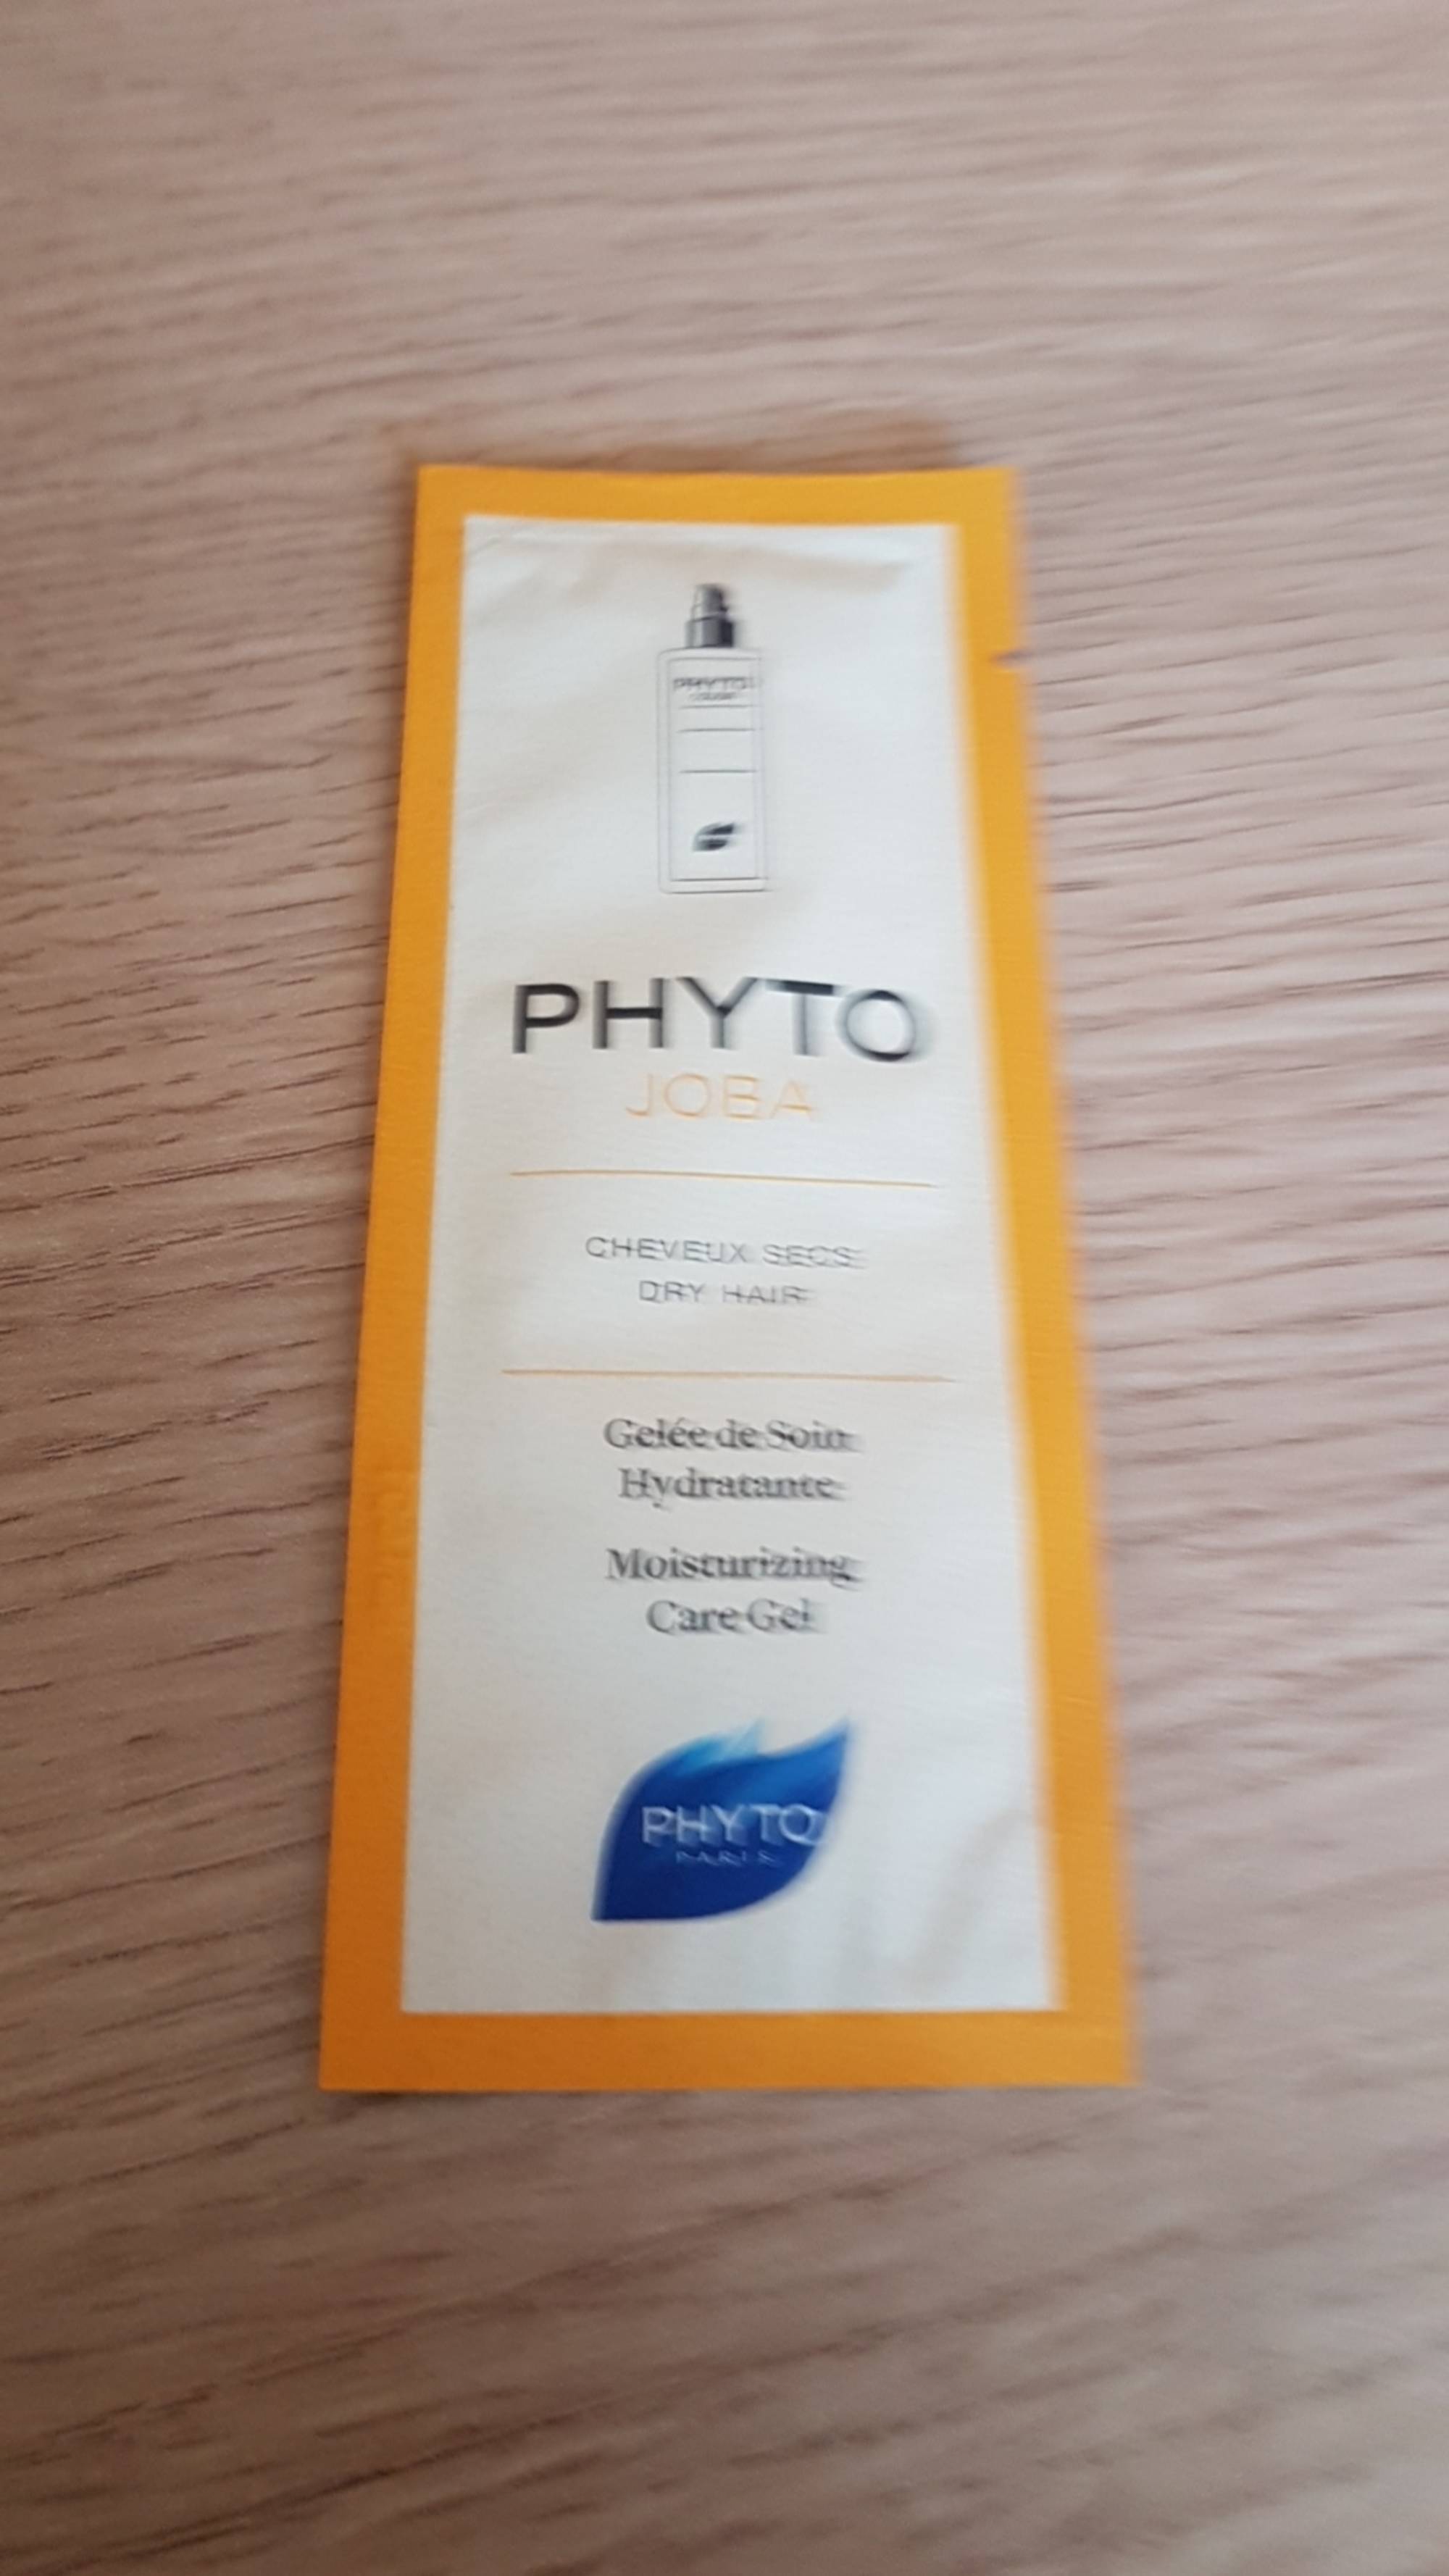 PHYTO - Phyto joba - Gelée de soin hydratante